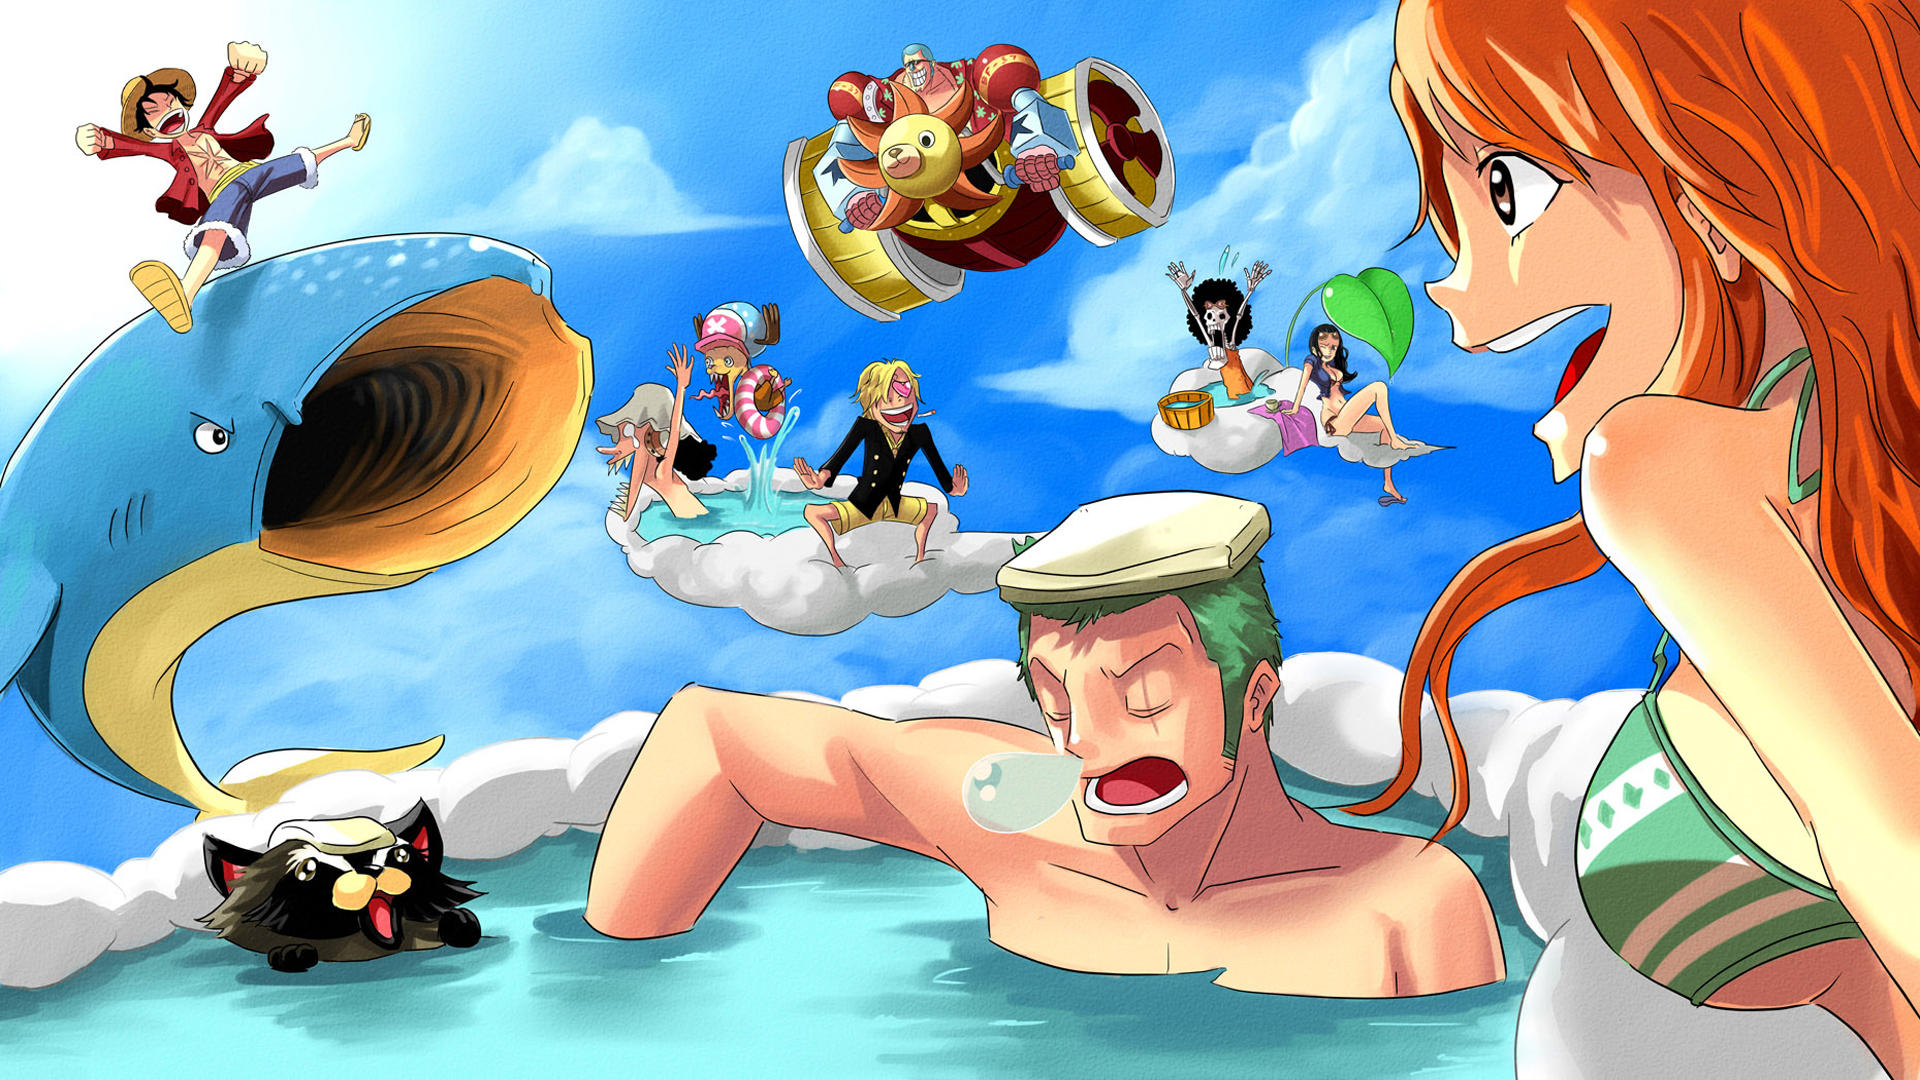 One Piece anime là một trong những bộ phim hoạt hình độc đáo và ấn tượng nhất mà bạn đã từng xem. Cùng khám phá thế giới đầy màu sắc và tràn đầy tính cách của chính những nhân vật trong bộ anime này. Hãy cùng trải nghiệm những phút giây tuyệt vời nhất với One Piece anime.